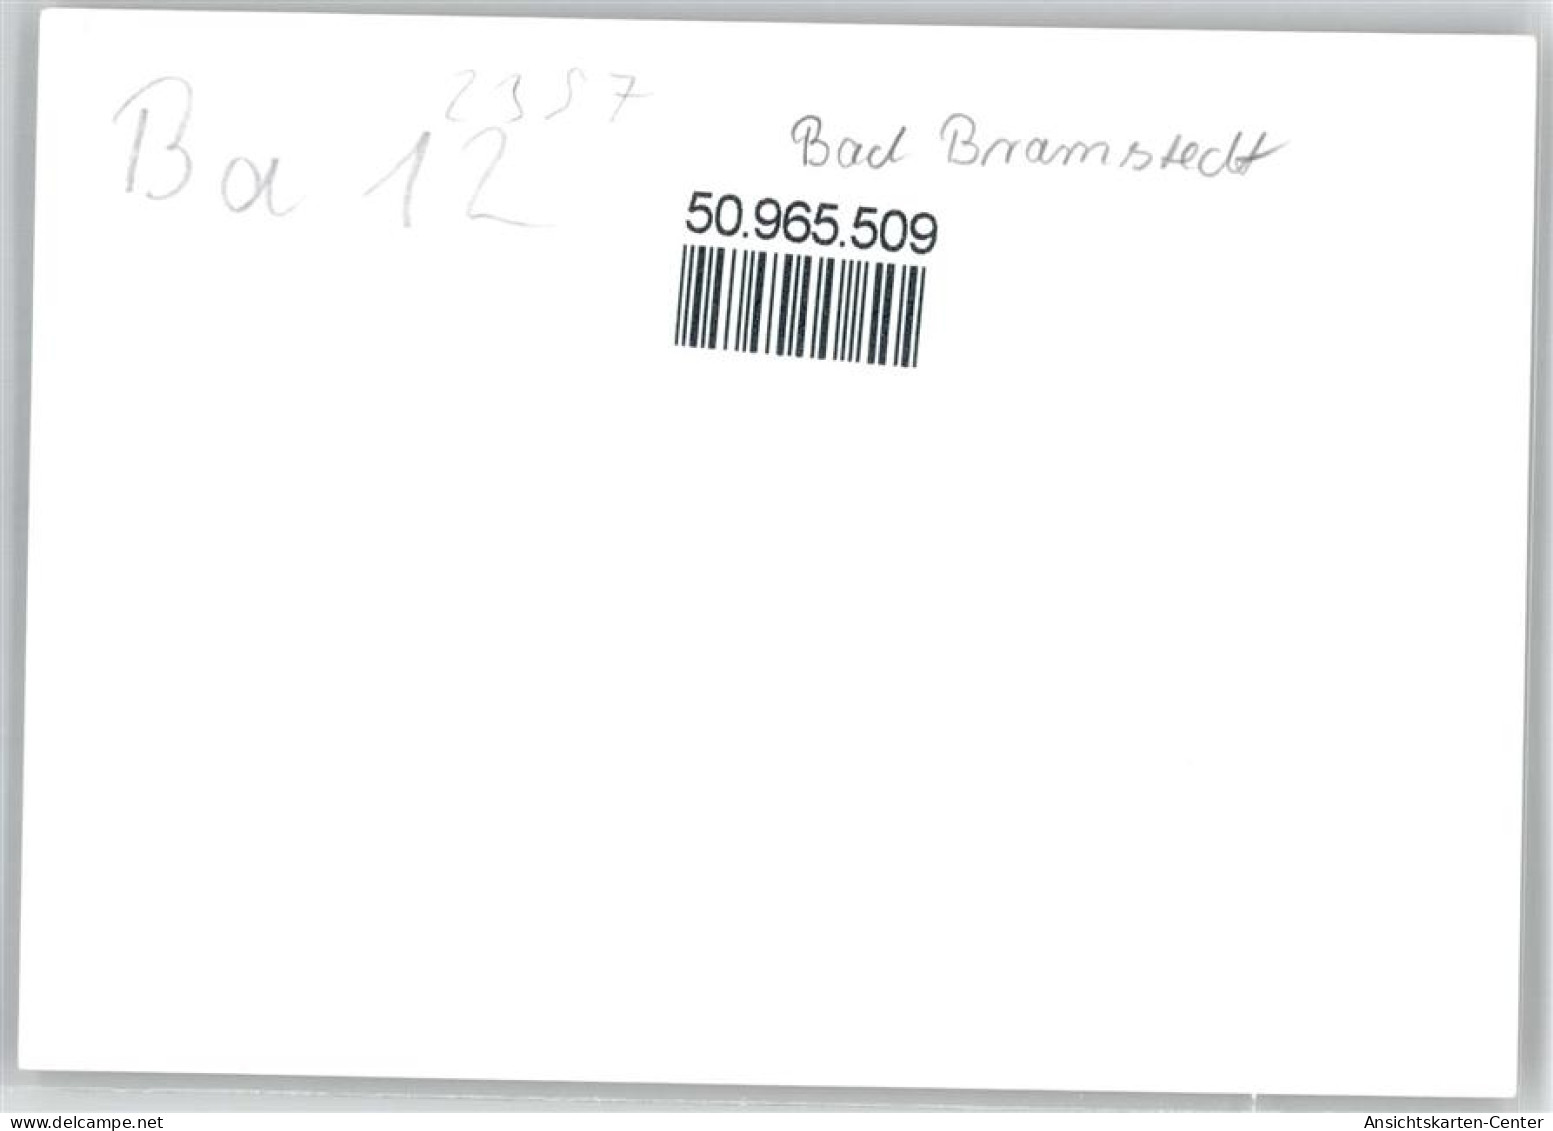 50965509 - Bad Bramstedt - Bad Bramstedt